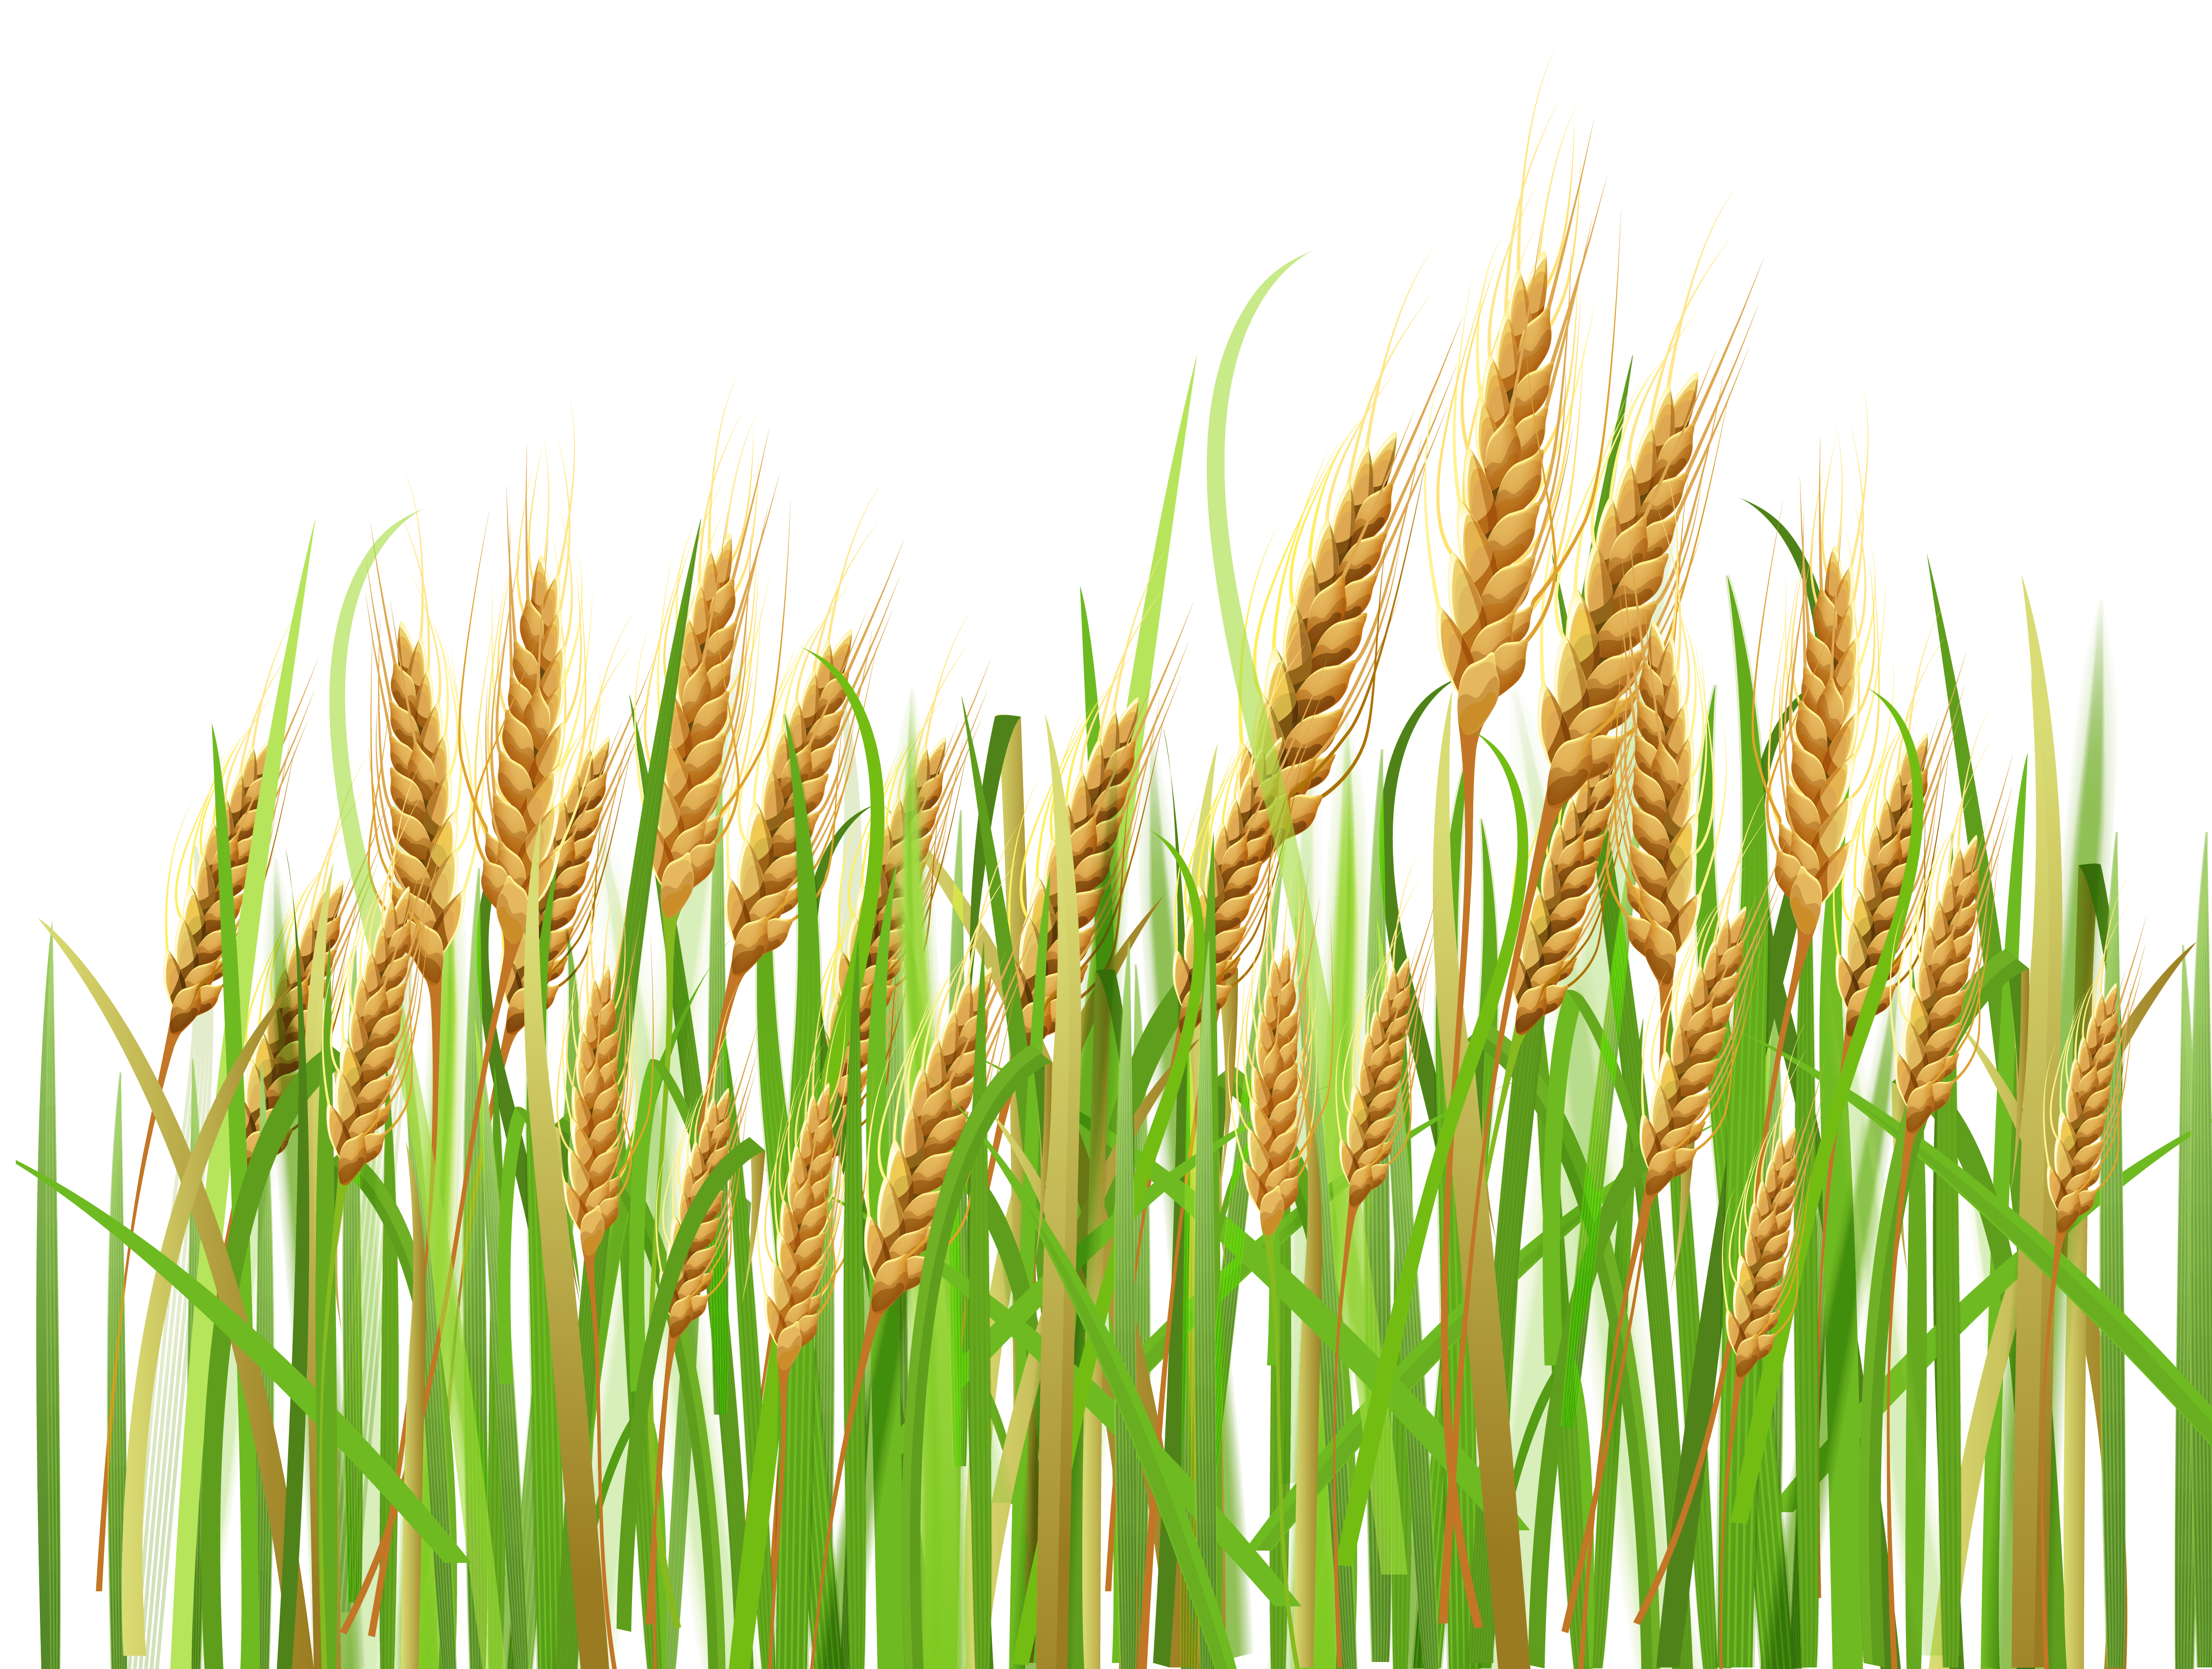 crops clipart wheat crop